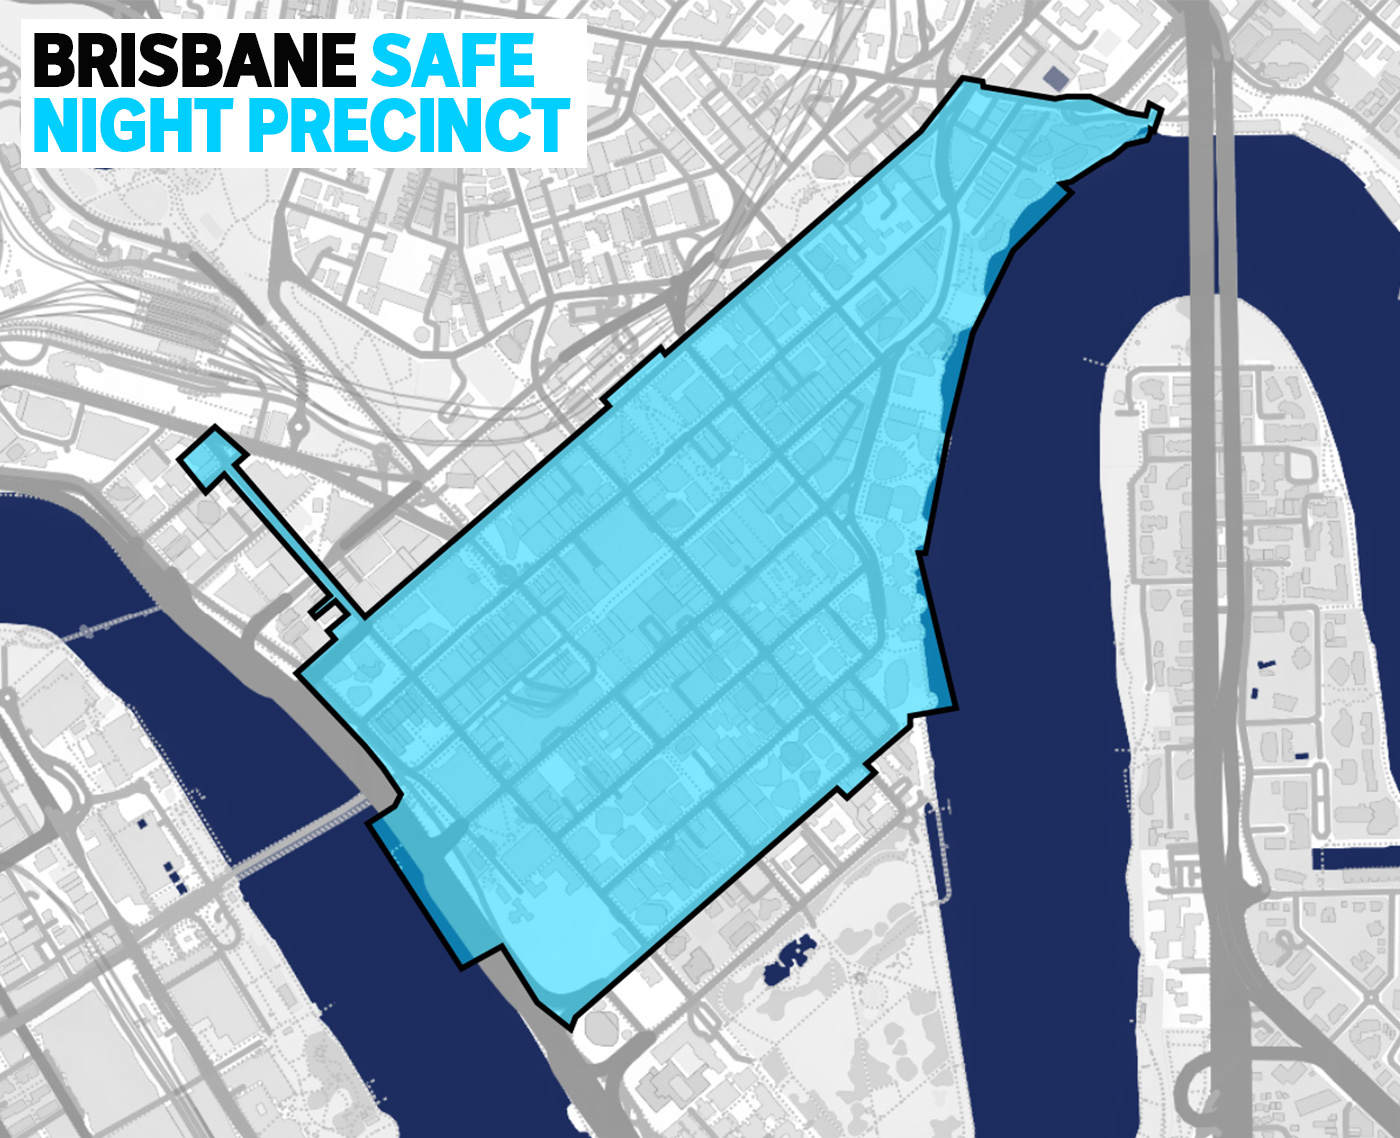 A map of the Brisbane safe night precinct in blue